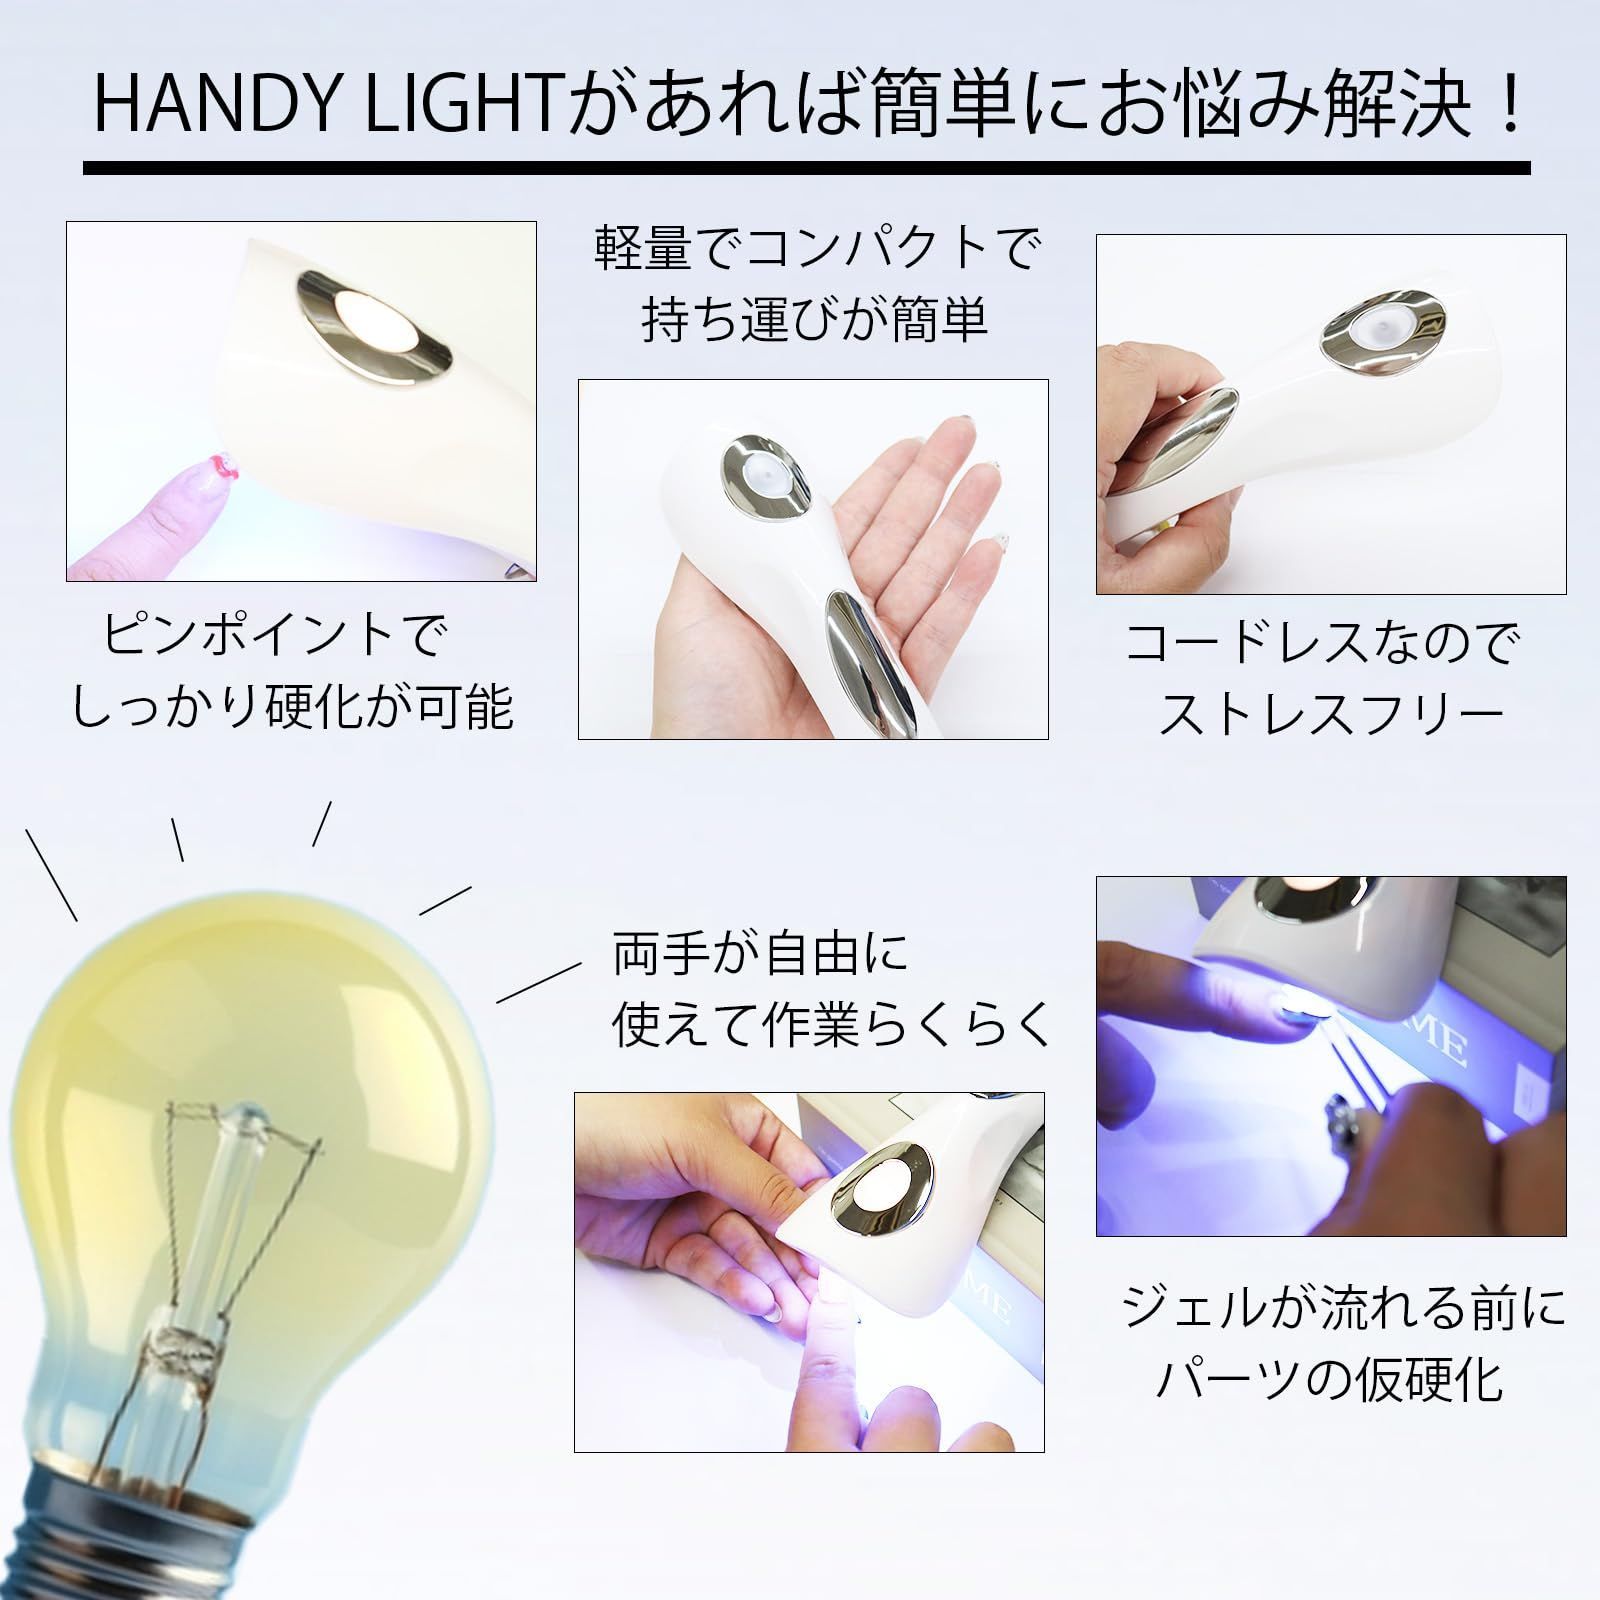 ネイル ライト ジェル UV LED 仮硬化 ハンディ 充電式 白 迅速な対応で商品をお届け致します - ネイルアート用品(筆など)